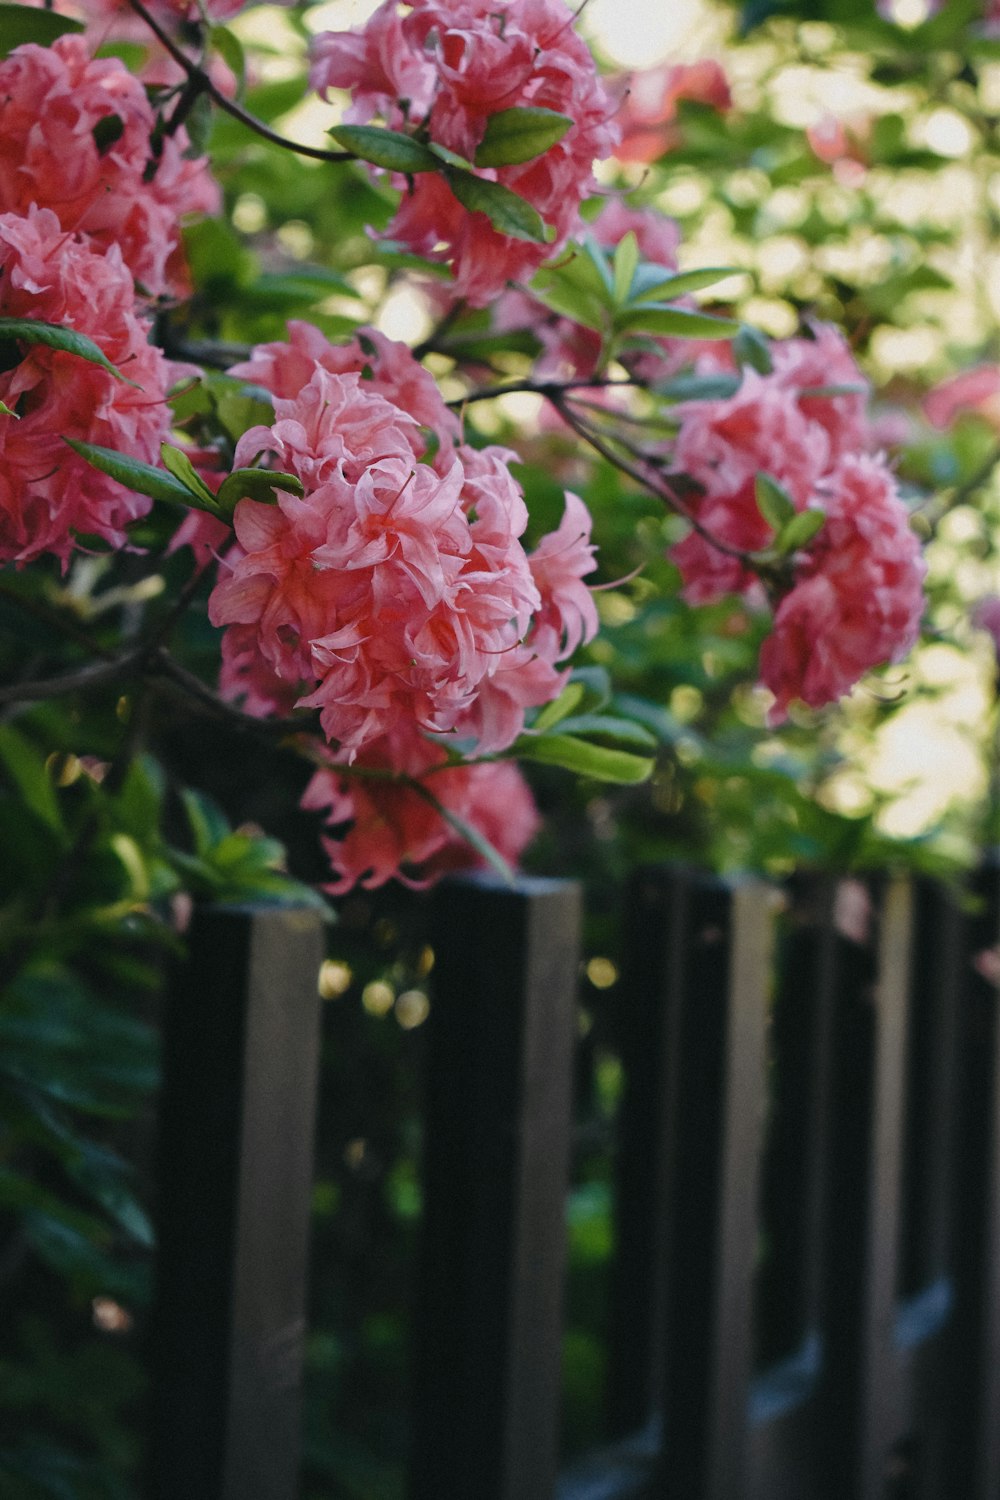 flores cor-de-rosa estão crescendo em uma cerca preta